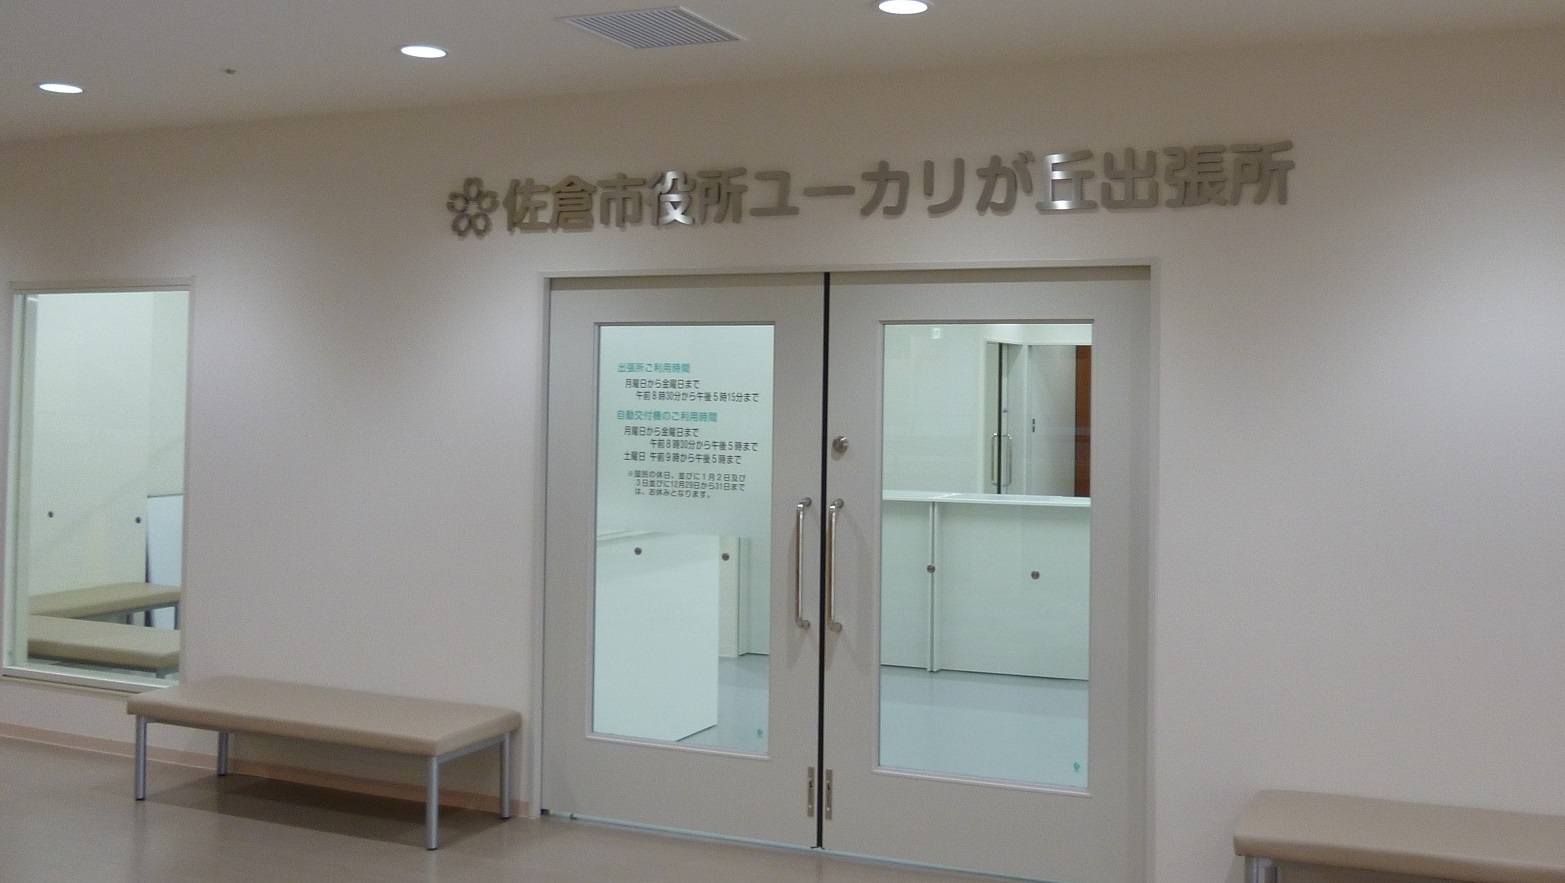 大きな二枚扉の上に佐倉市役所ユーカリが丘出張所と書かれており、扉の両隣には長椅子が設置してあるユーカリが丘出張所の写真